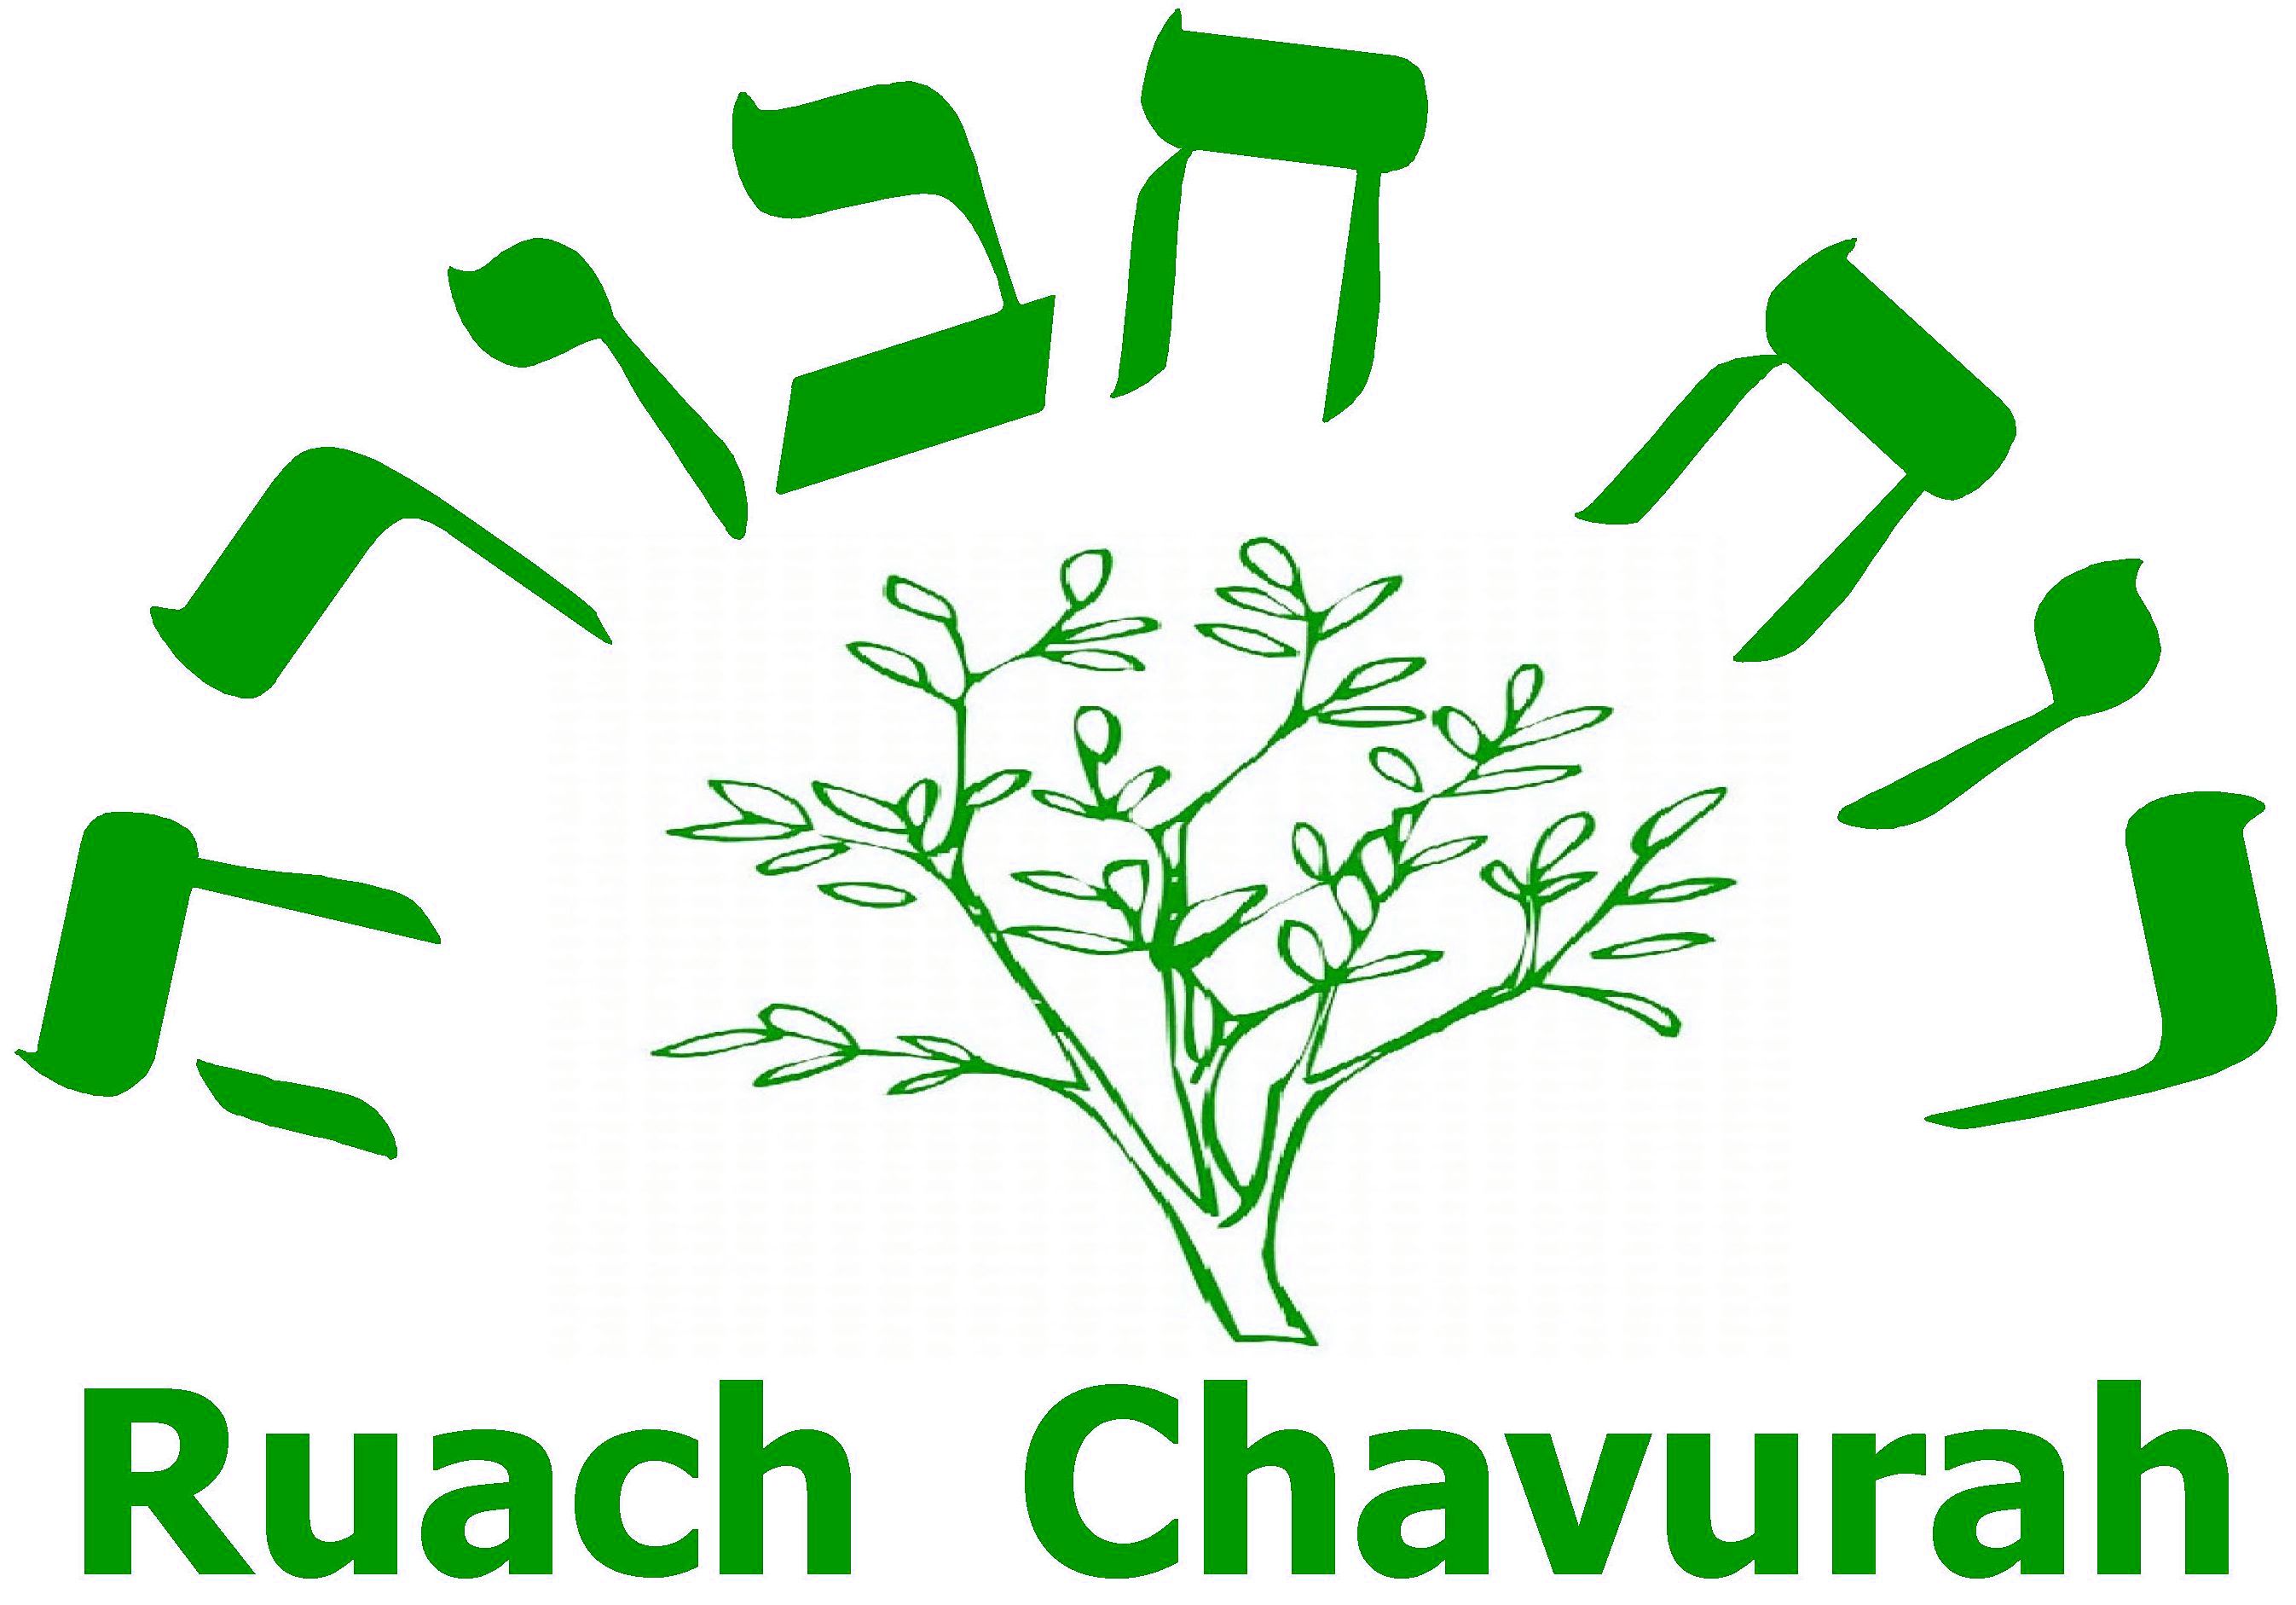 Ruach Chavurah